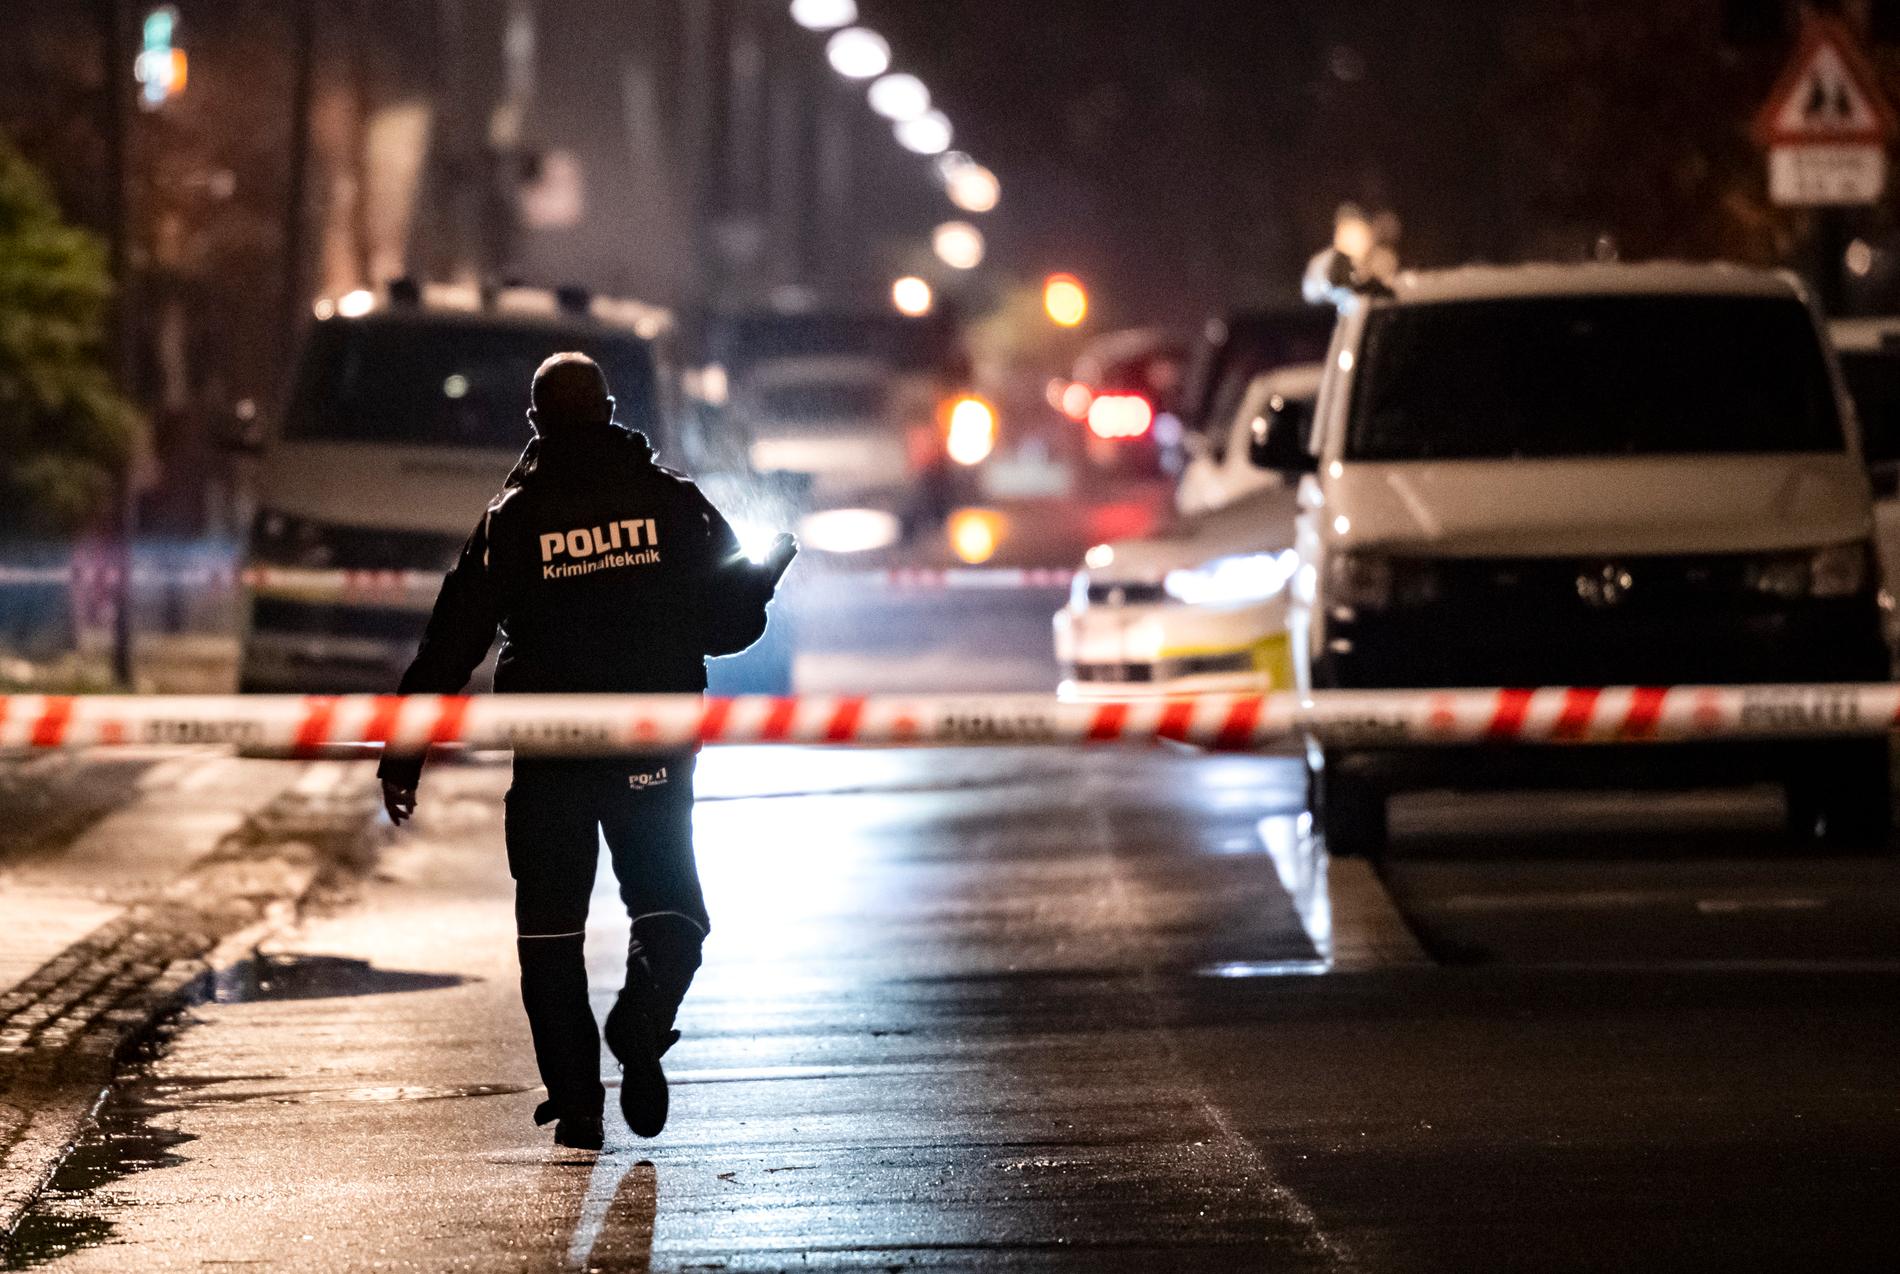 Polisens kriminaltekniker på plats under fredagskvällen efter mordet på en frisörsalong i västra Köpenhamn. Under lördagen inträffade ännu en skjutning i staden.